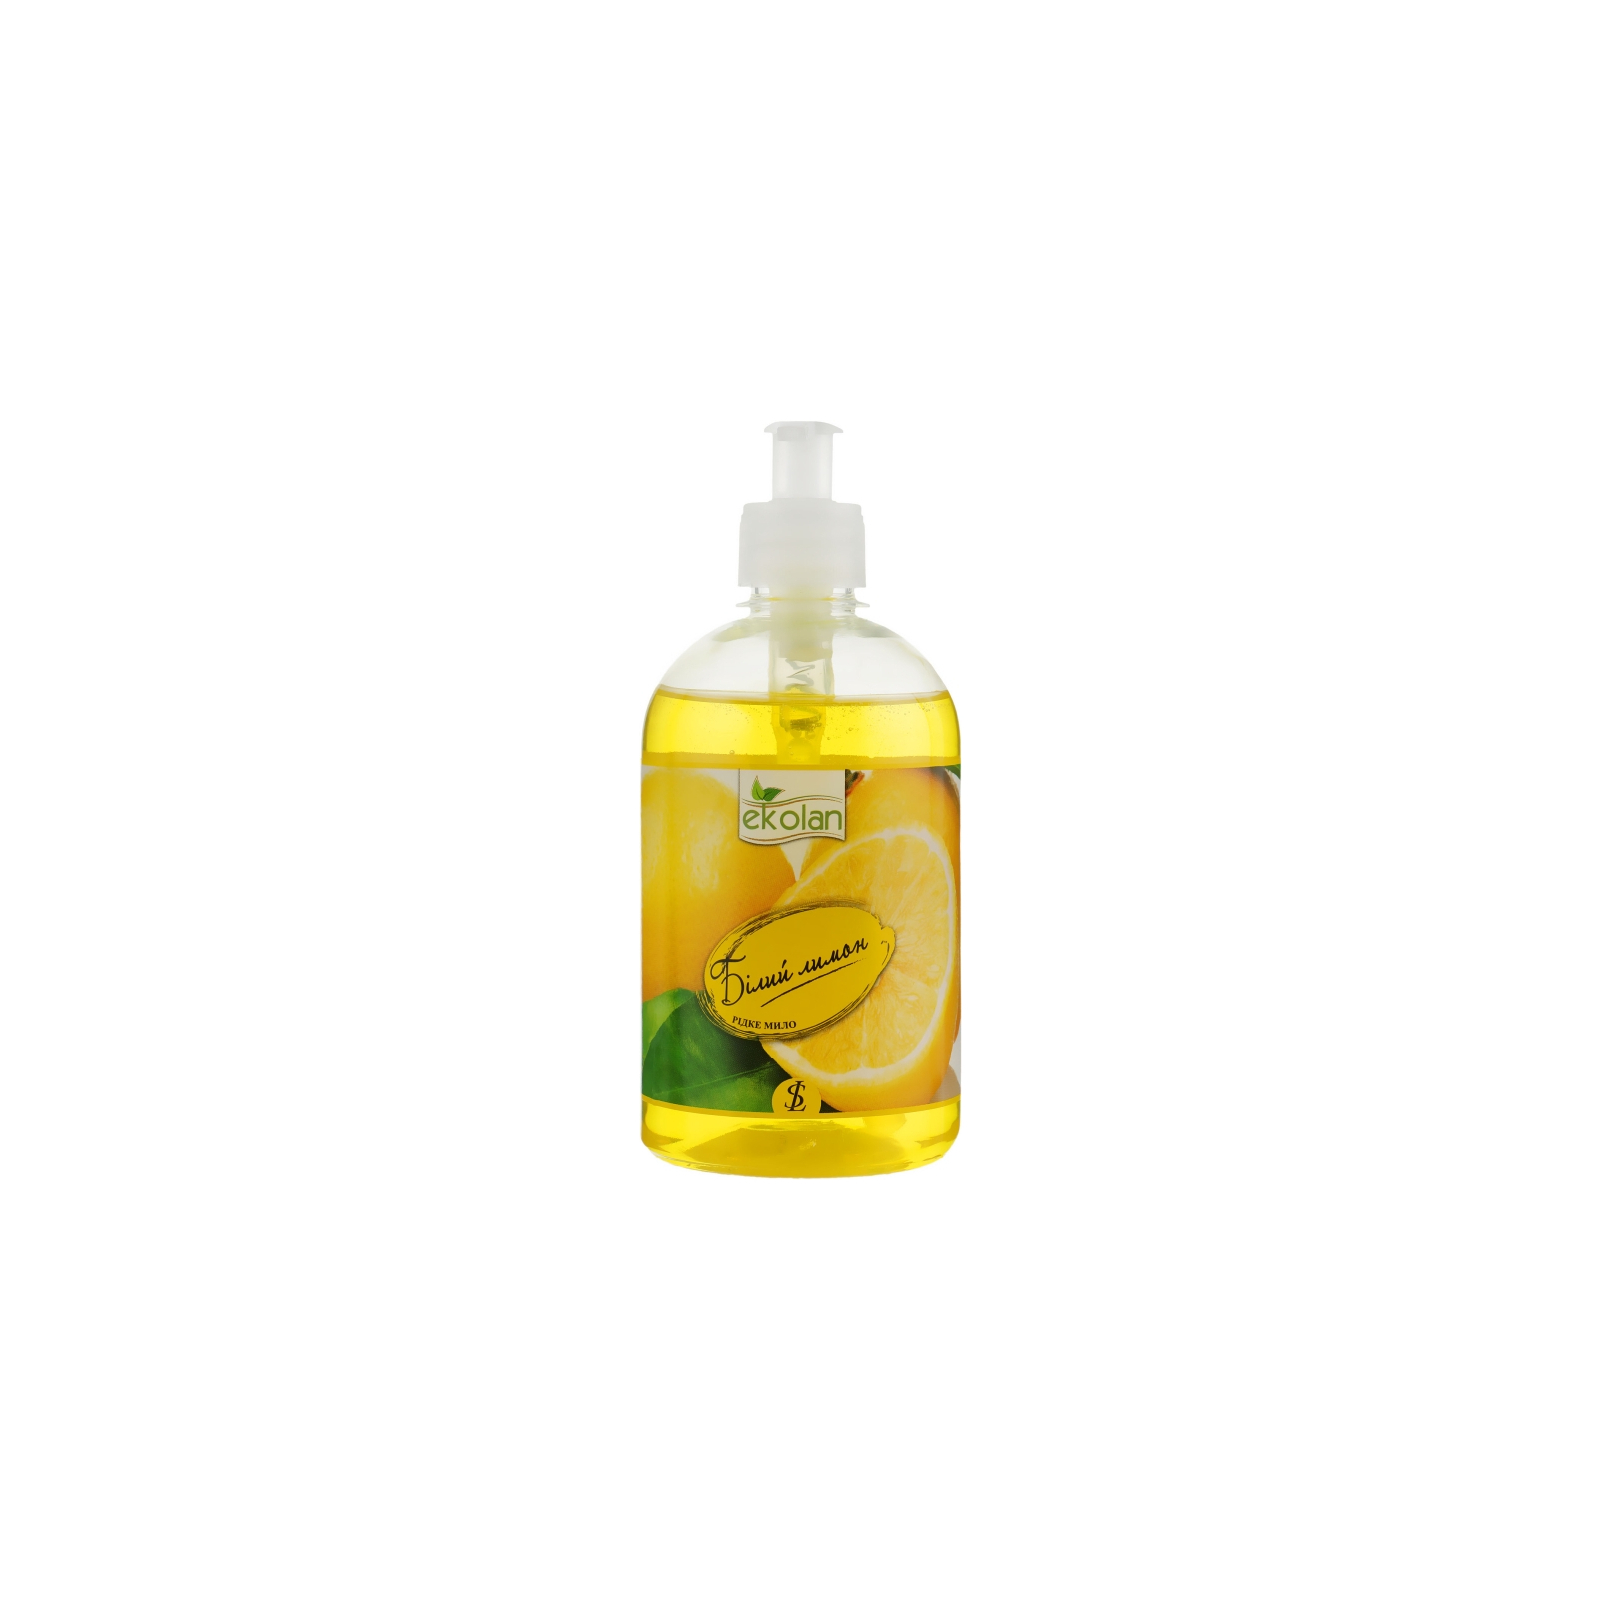 Жидкое мыло Ekolan Белый лимон 500 г (4820217130248)